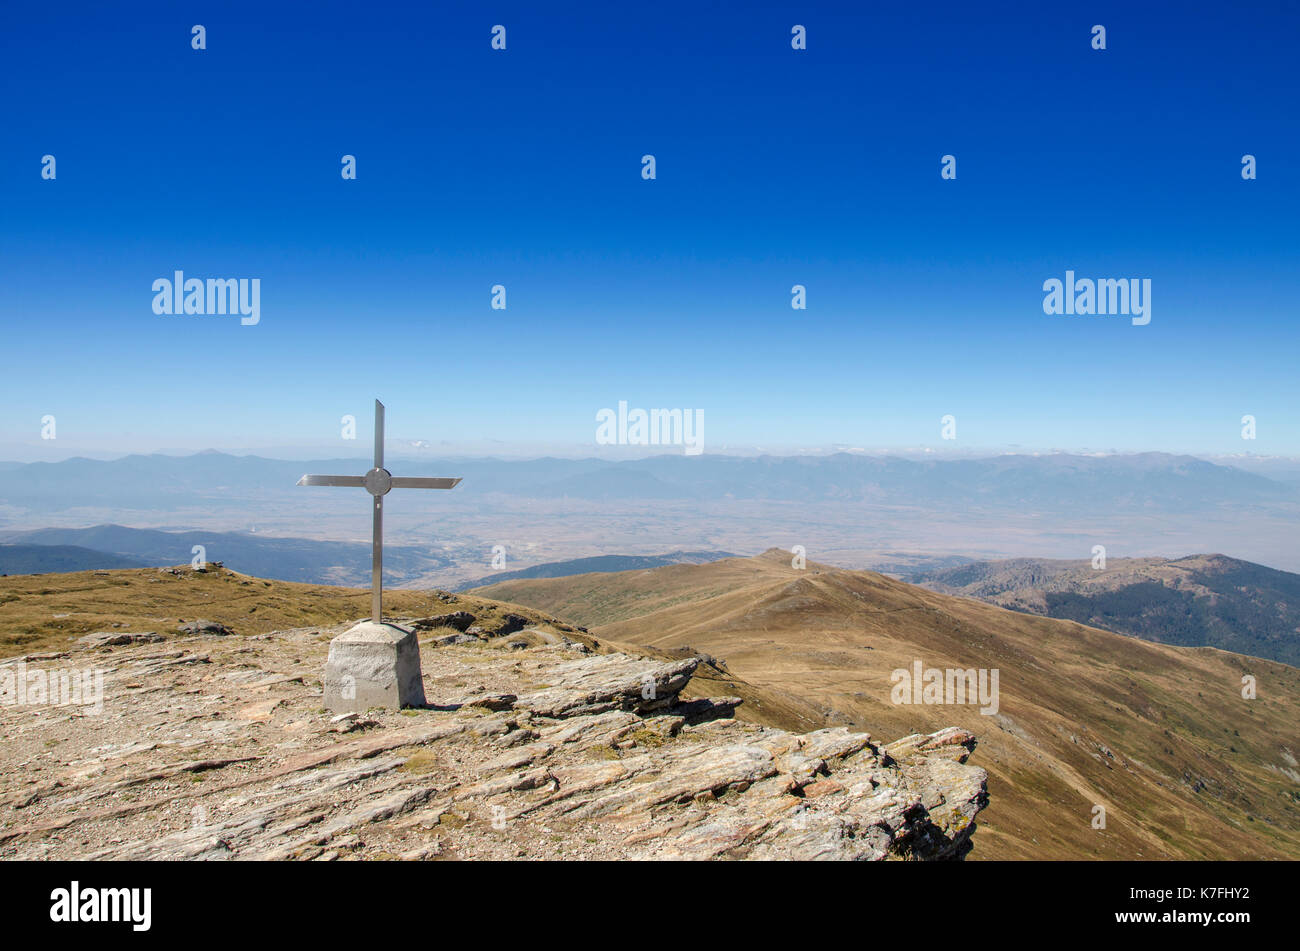 Kreuz - Kajmakchalan-WW 1 Lage - Mazedonien - Griechenland Grenze Stockfoto